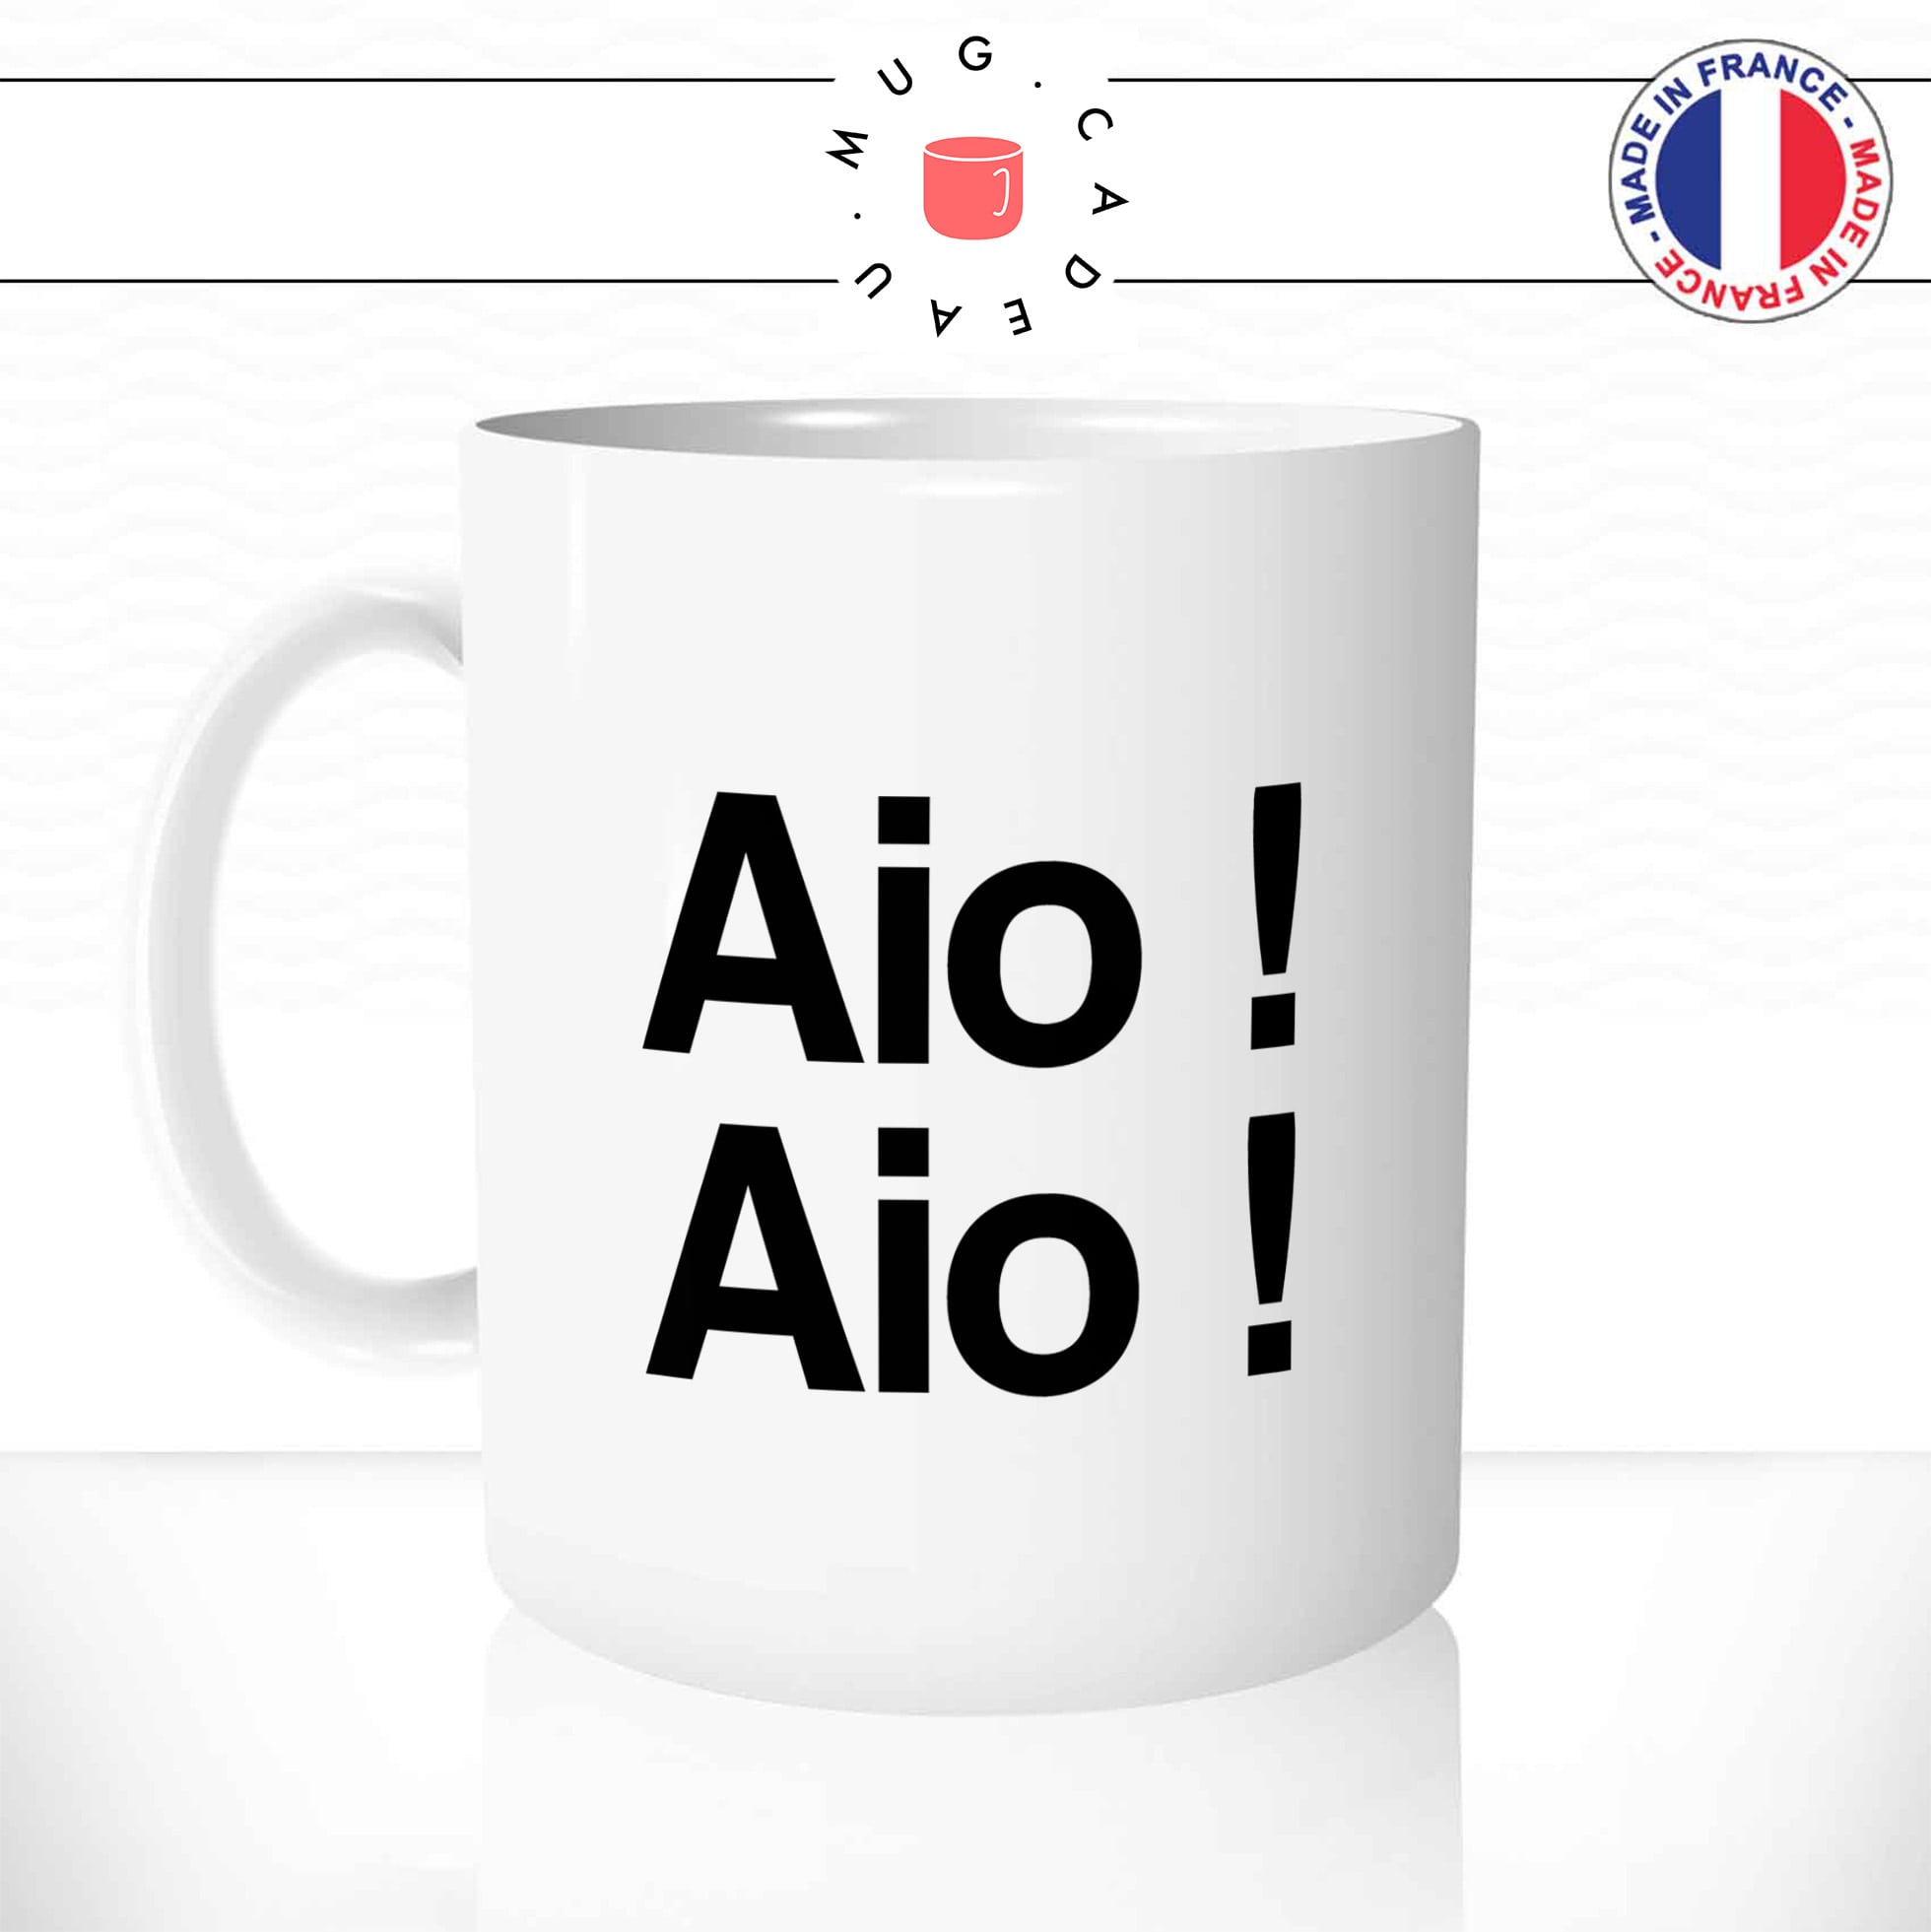 mug-tasse-aio-citation-phrase-mot-expression-corse-corsica-langue-region-france-café-thé-humour-fun-idée-cadeau-original-personnalisée-min